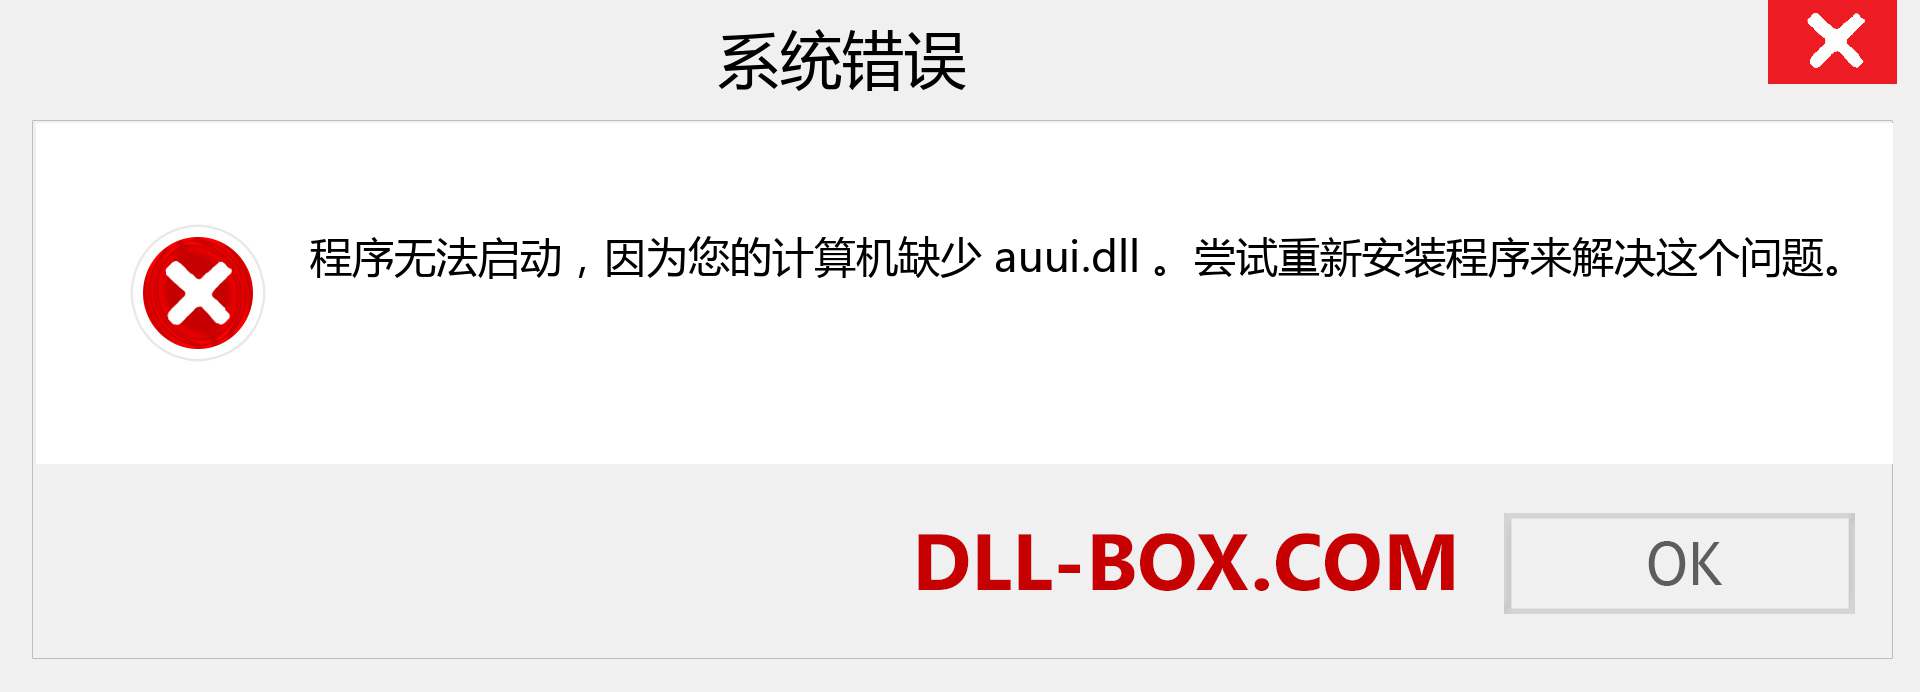 auui.dll 文件丢失？。 适用于 Windows 7、8、10 的下载 - 修复 Windows、照片、图像上的 auui dll 丢失错误